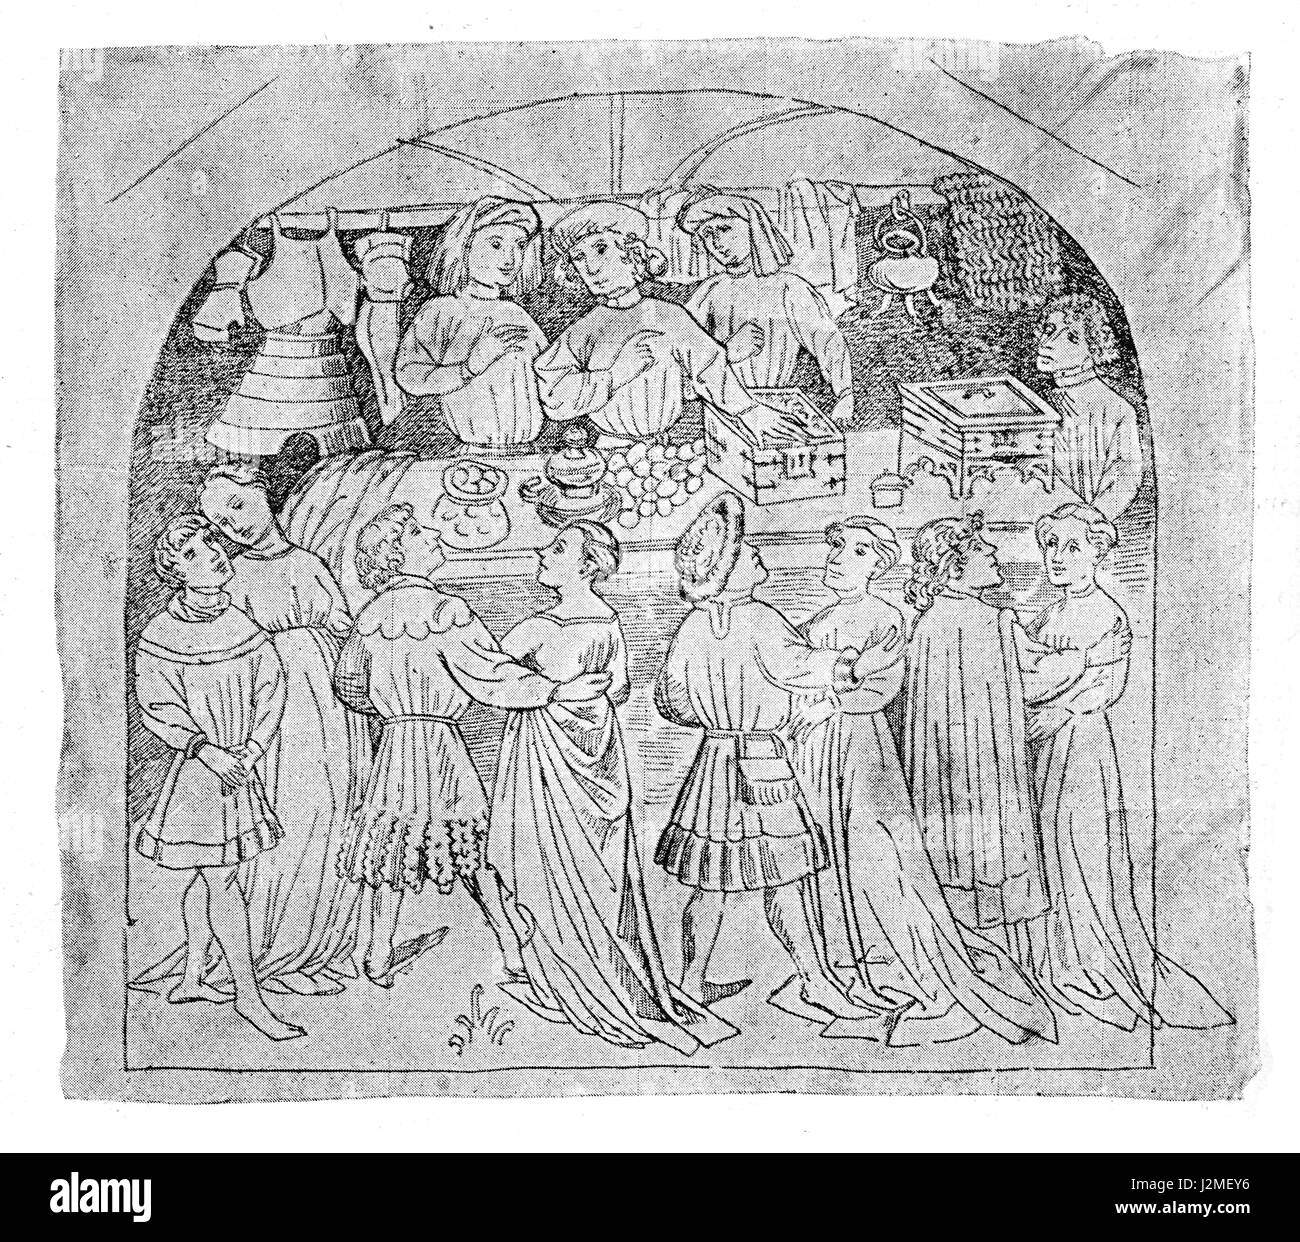 La représentation médiévale d'un stand du marché offrant des marchandises, des vêtements, des armures et de l'alimentation Banque D'Images